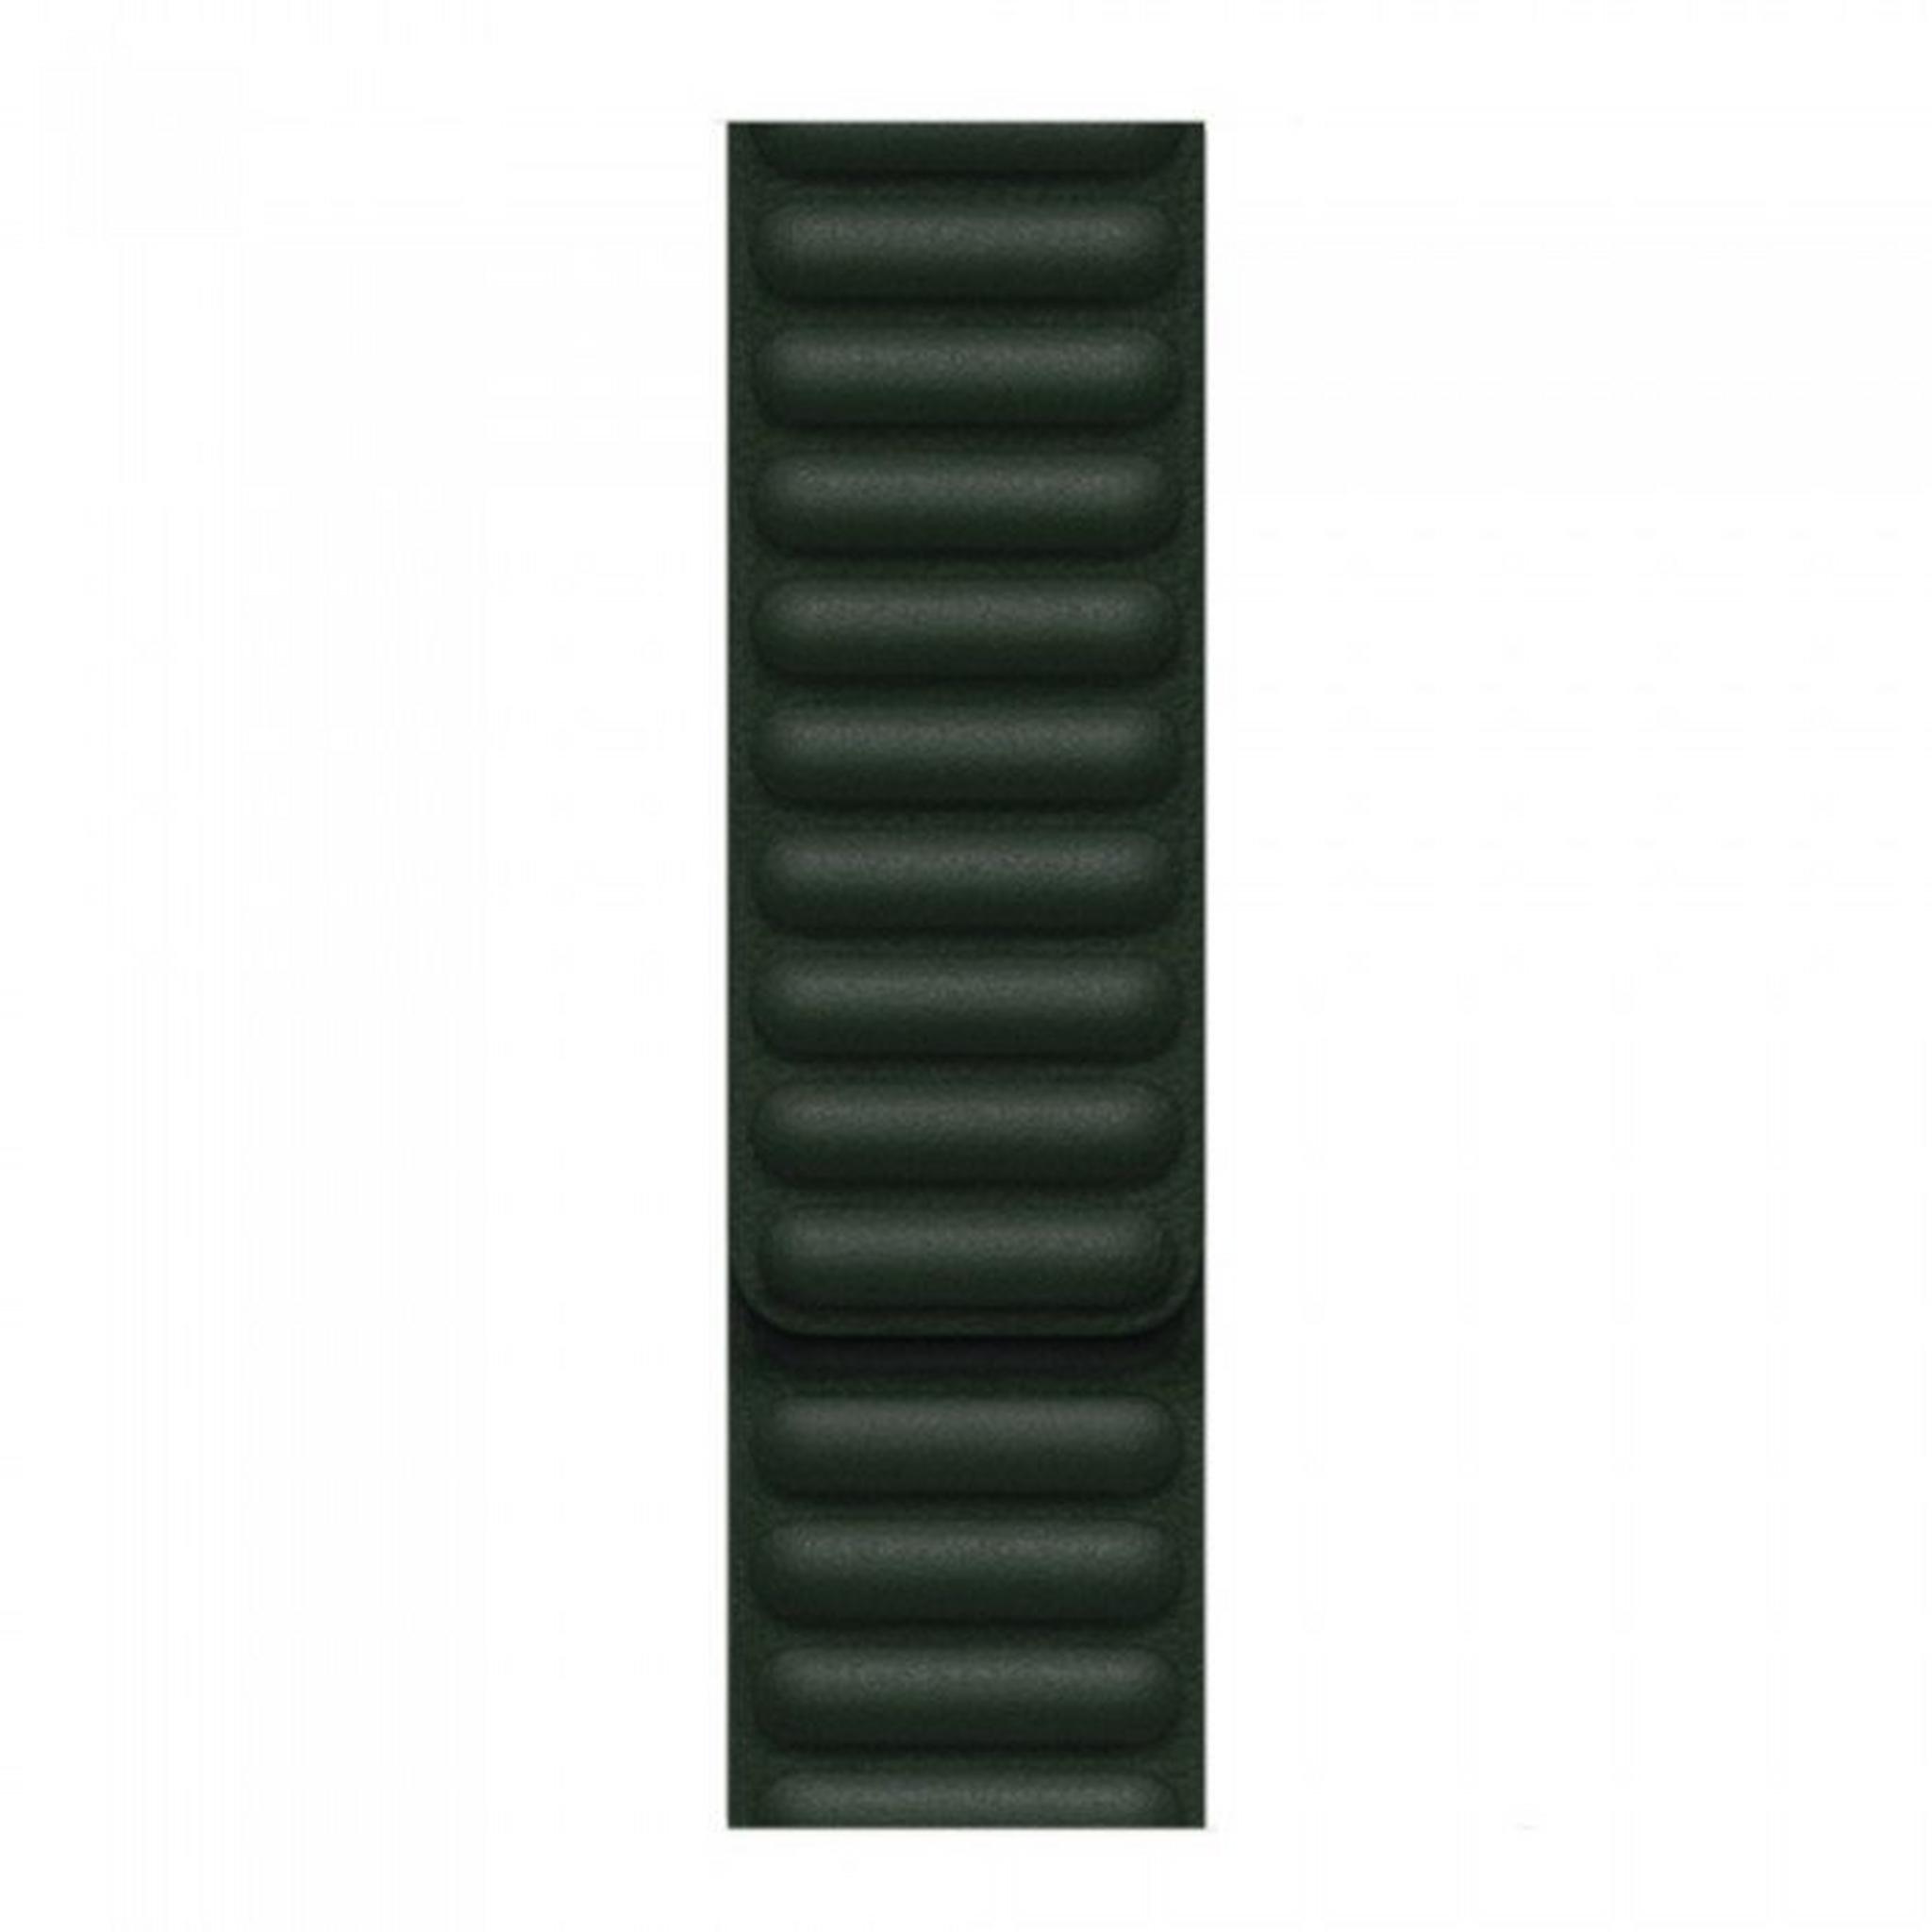 Apple Leather Link Bracelet 41mm - Sequoia Green M/L